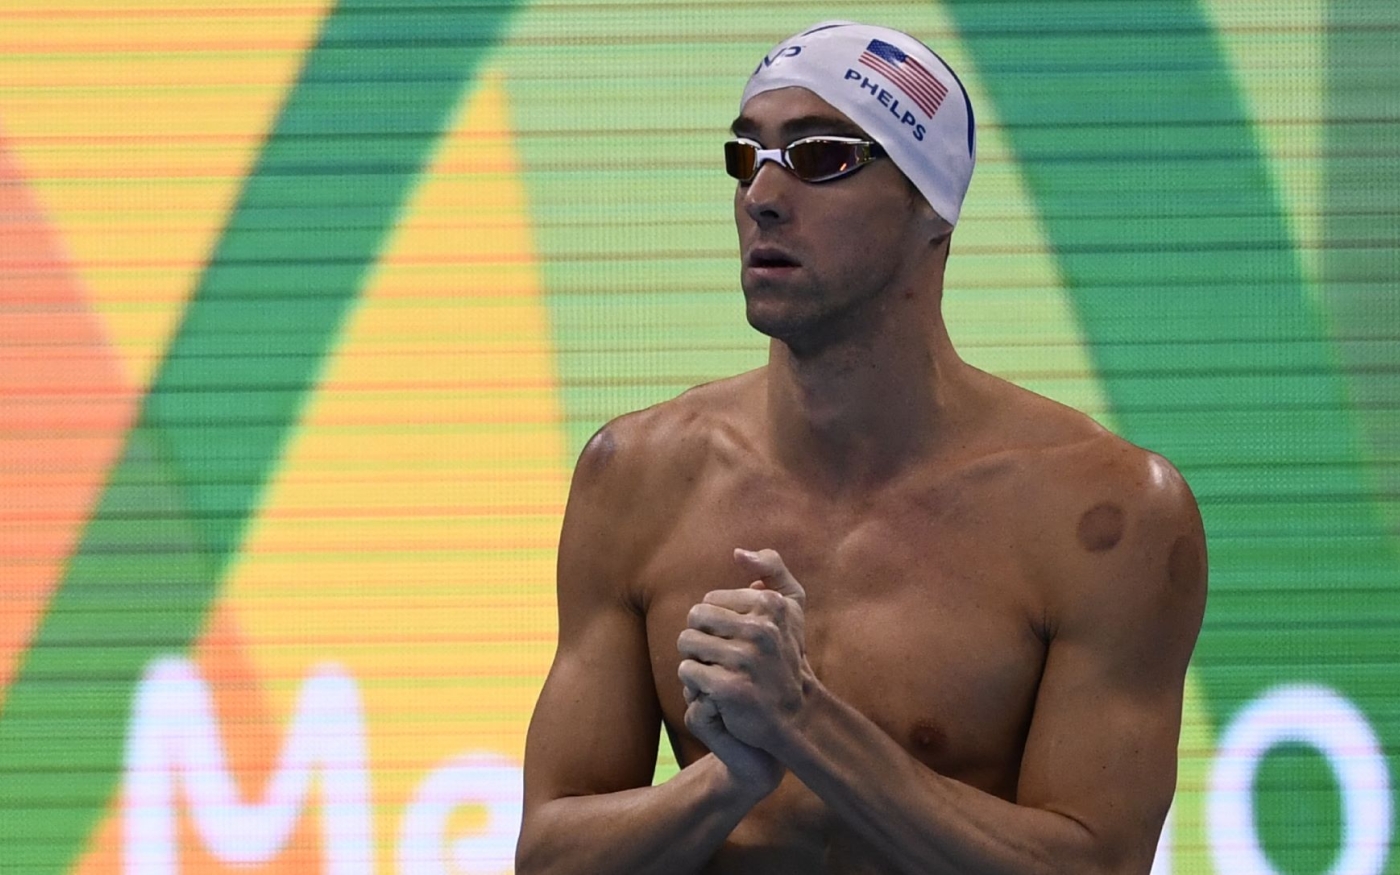 Le nageur américain Michael Phelps présente des ecchymoses sur son corps lors des Jeux olympiques de Rio en 2016 (AFP/Christophe Simon)